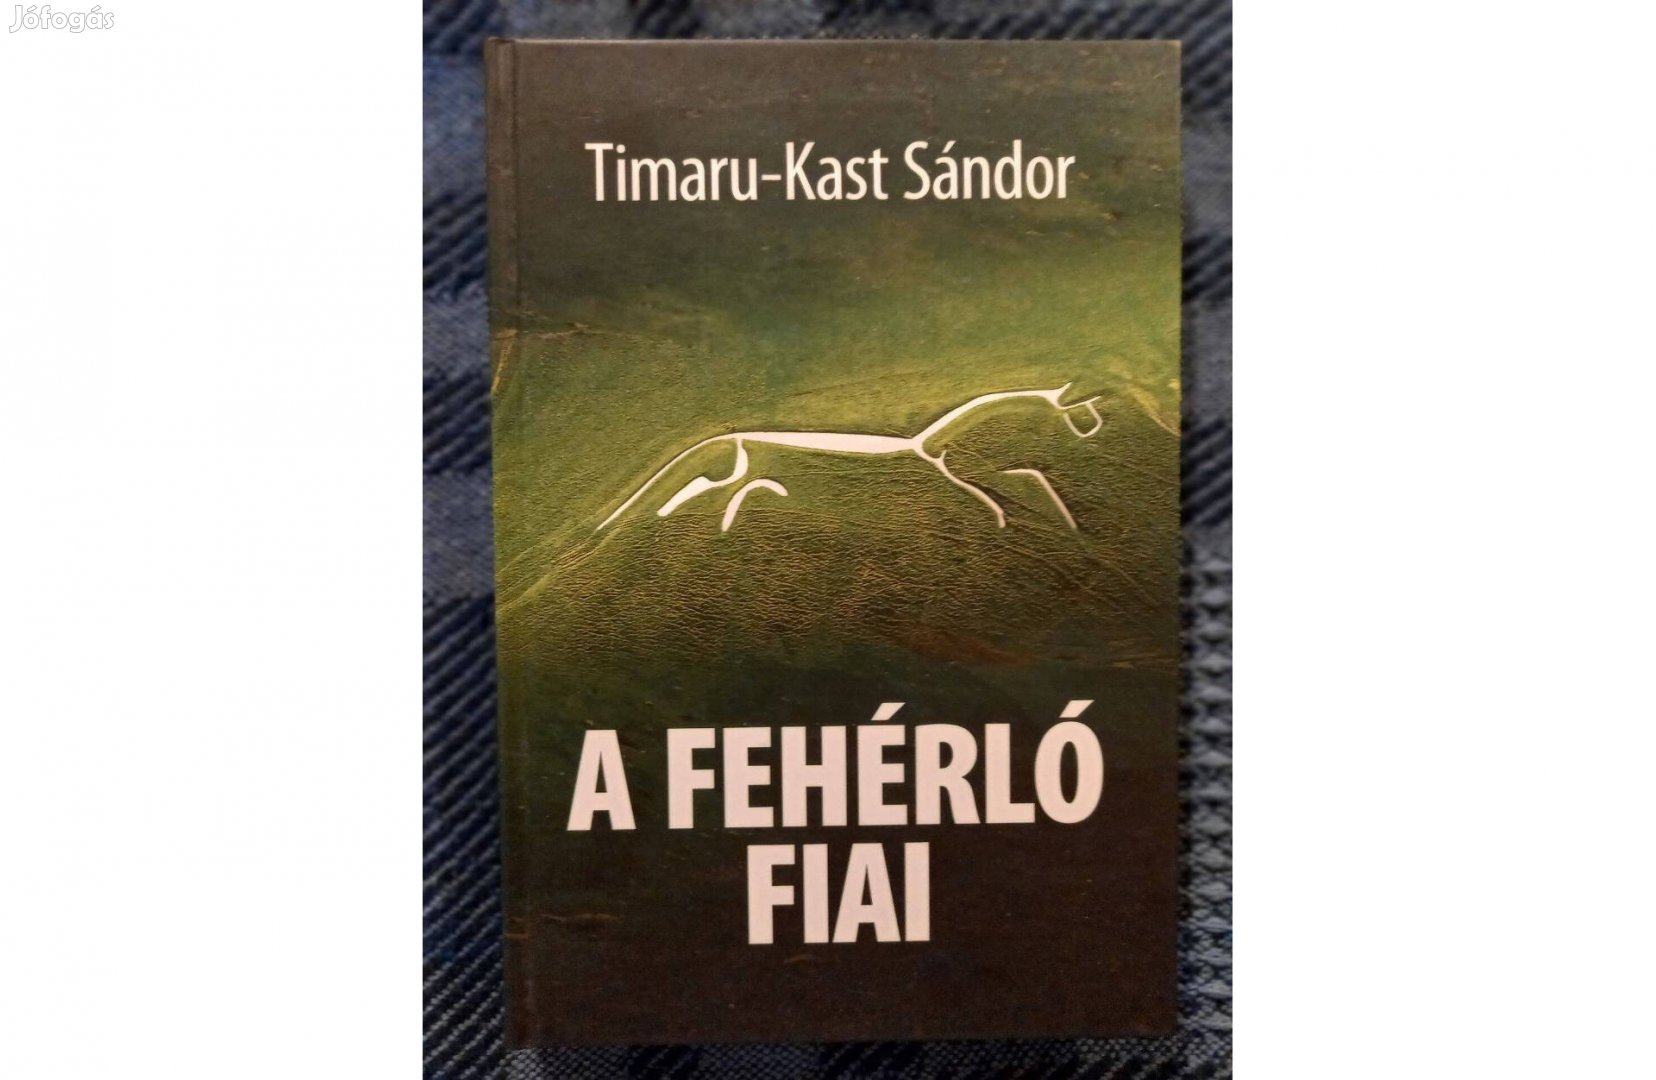 Timaru-Kast Sándor: A fehérló fiai c. könyv jó állapotban eladó